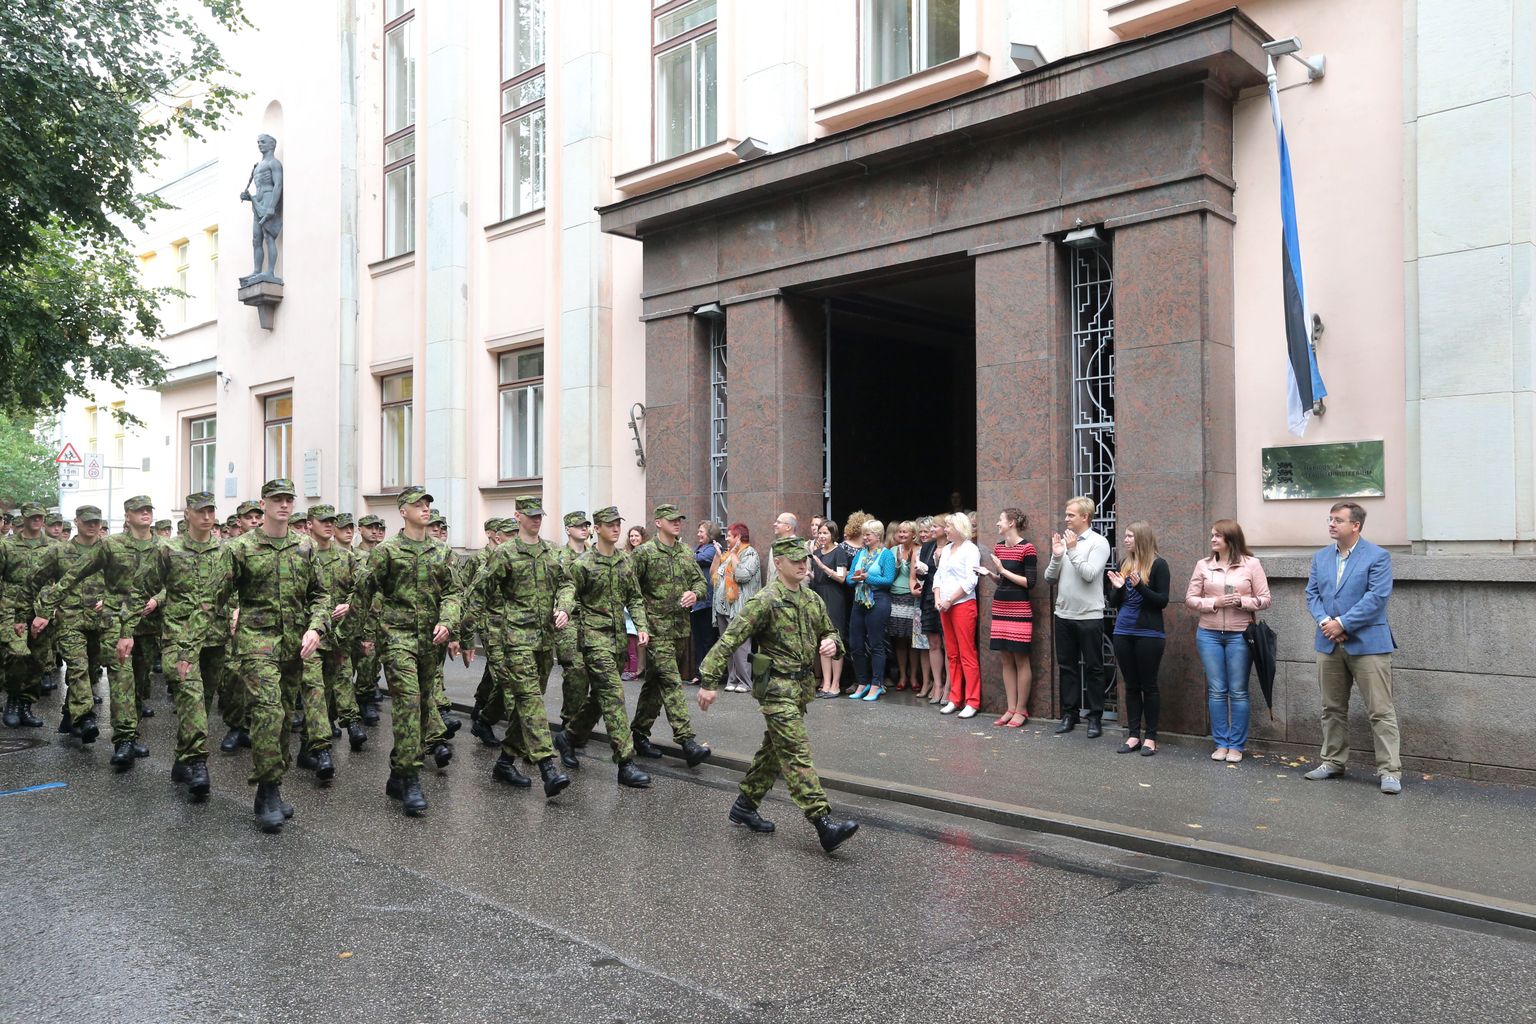 Kaitseväe ühendatud õppeasutused tähistasid õppeaasta algust piduliku jalutuskäiguga Tartu linnas ja relvastuse ning tehnika näitusega kaitseväe ühendatud õppeasutuste esisel platsil ja fuajees. 2017.